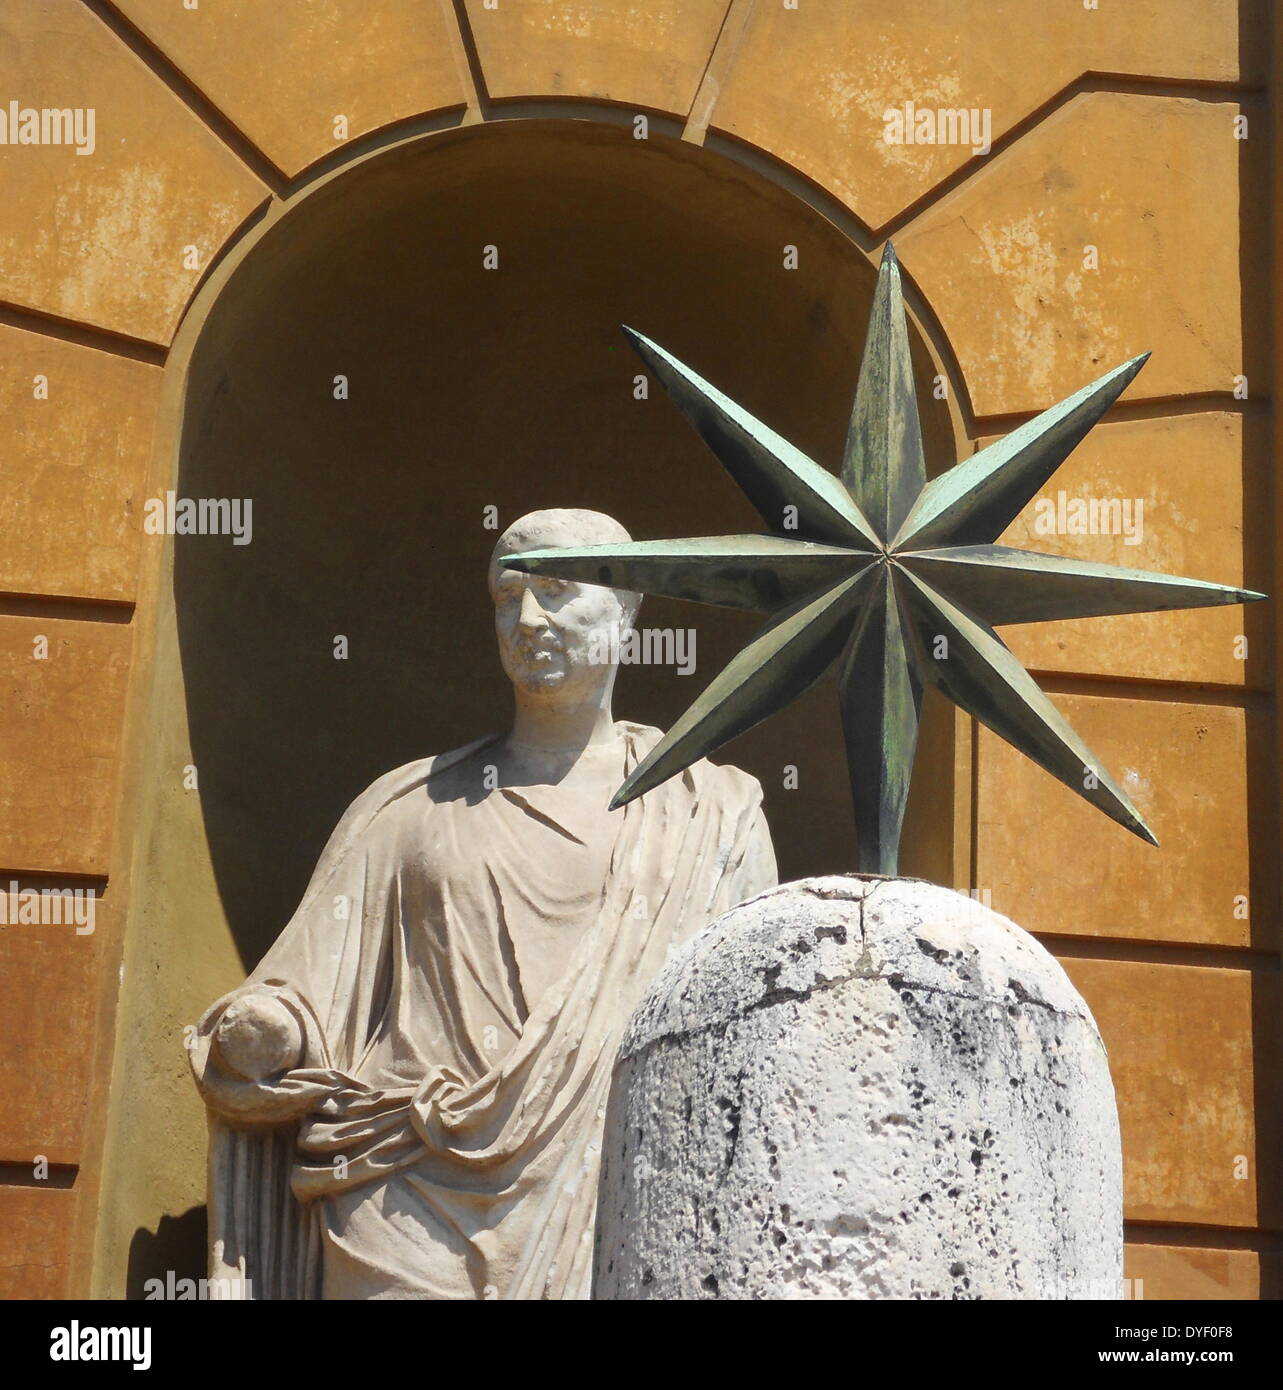 Detail aus der Vatikanischen Gärten, die großen weitläufigen städtischen Gärten, die mehr als die Hälfte der Vatikan Gebiet (rund 23 Hektar). Die Gärten sind mit Skulpturen, Reliefs und Springbrunnen dekoriert. Dieses Bild zeigt eine der vielen Skulpturen. Stockfoto